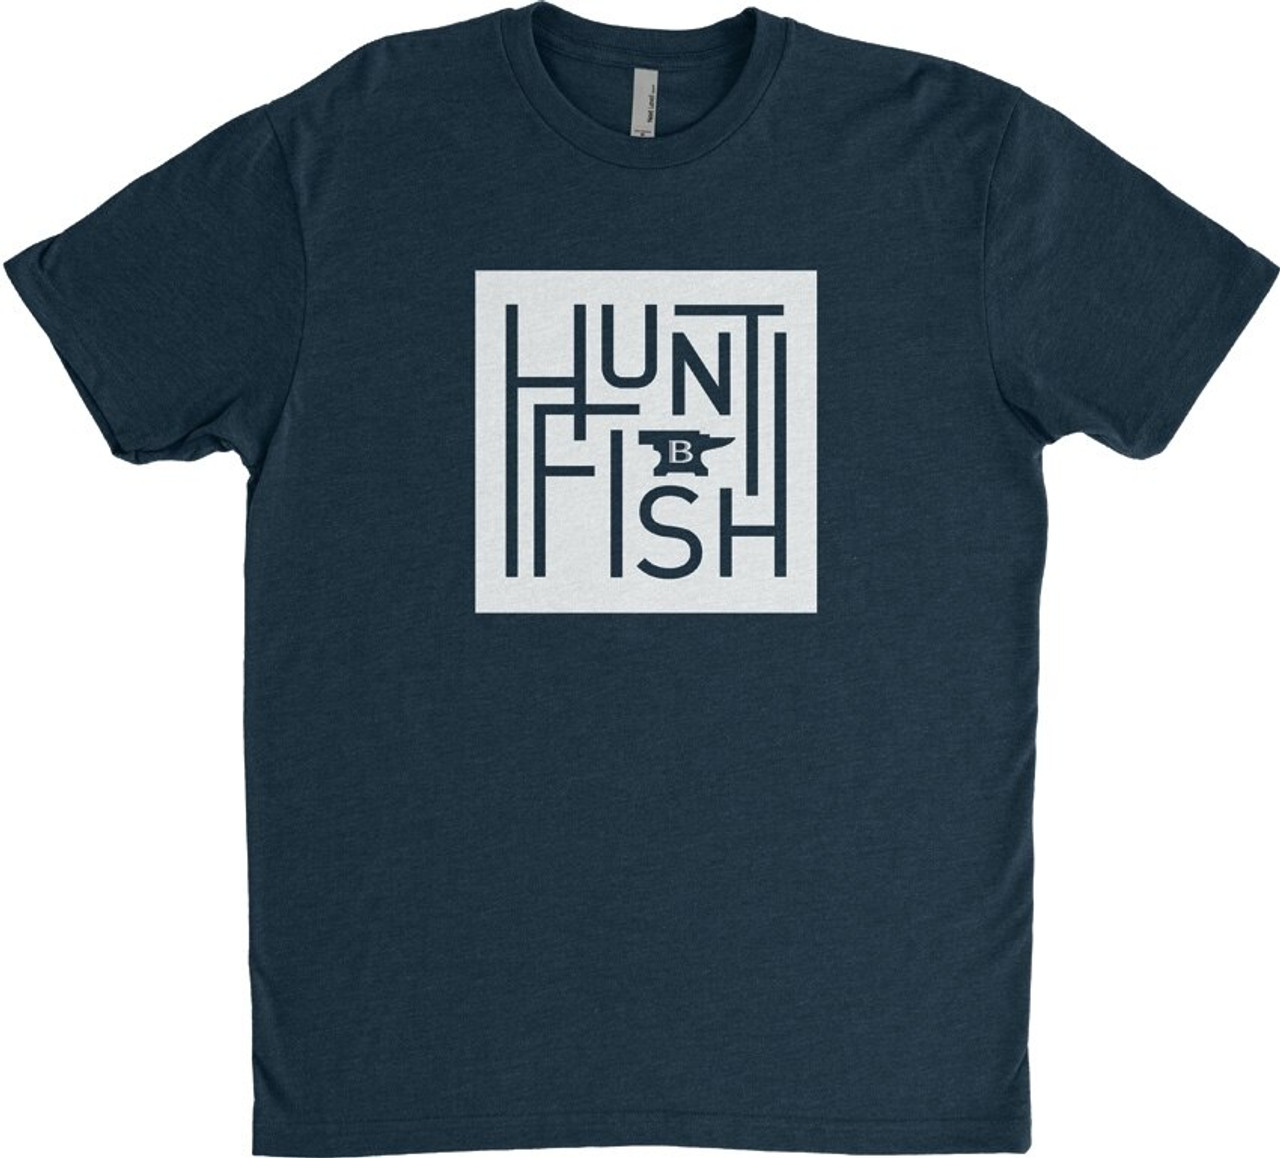 Buck Hunt Fish T-Shirt, L